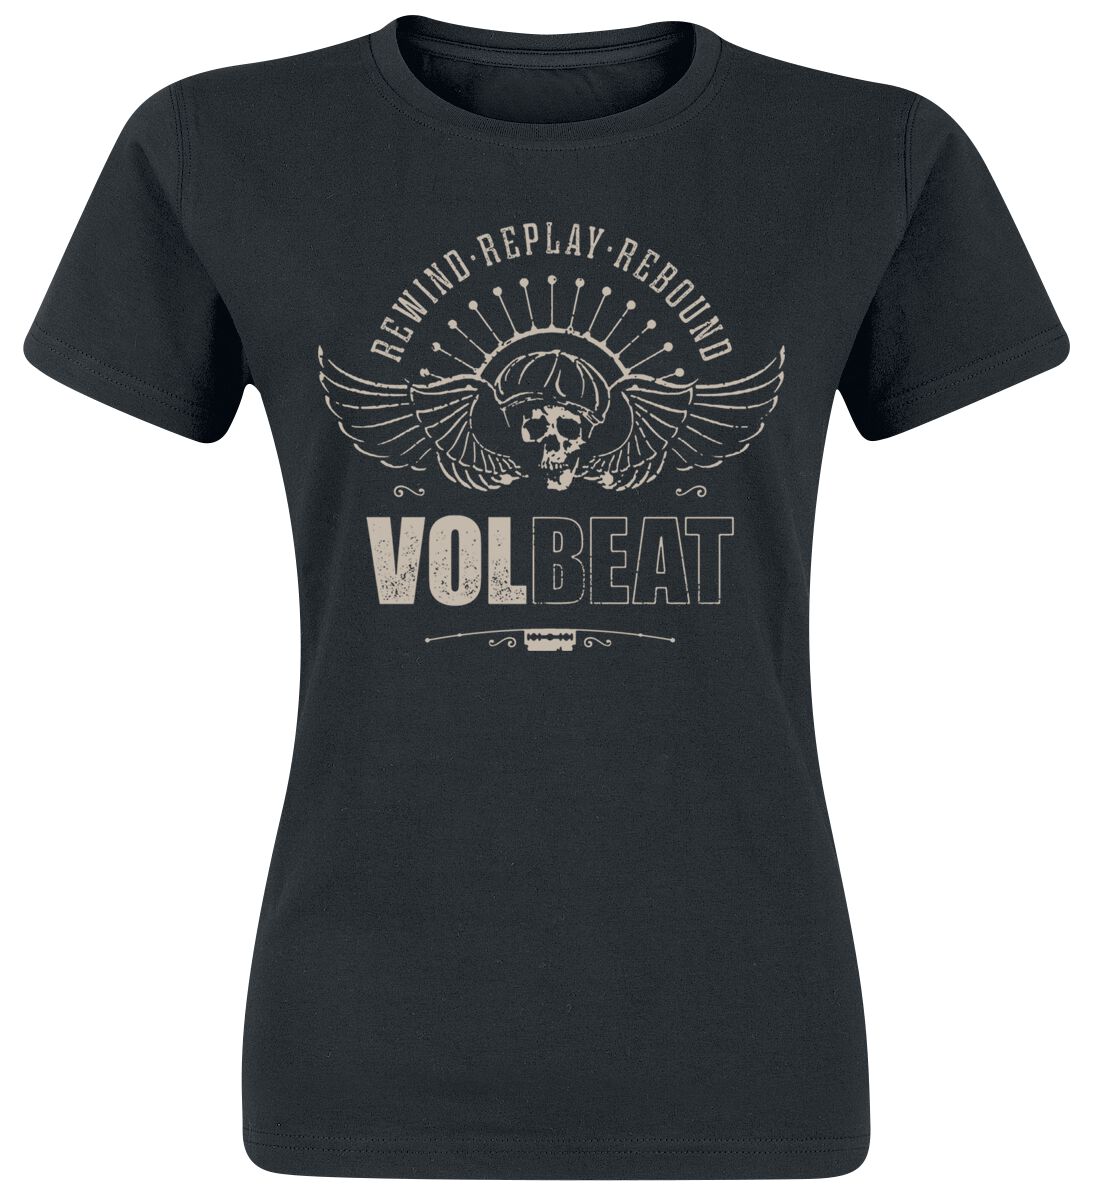 Levně Volbeat Skullwing - Rewind, Replay, Rebound Dámské tričko černá